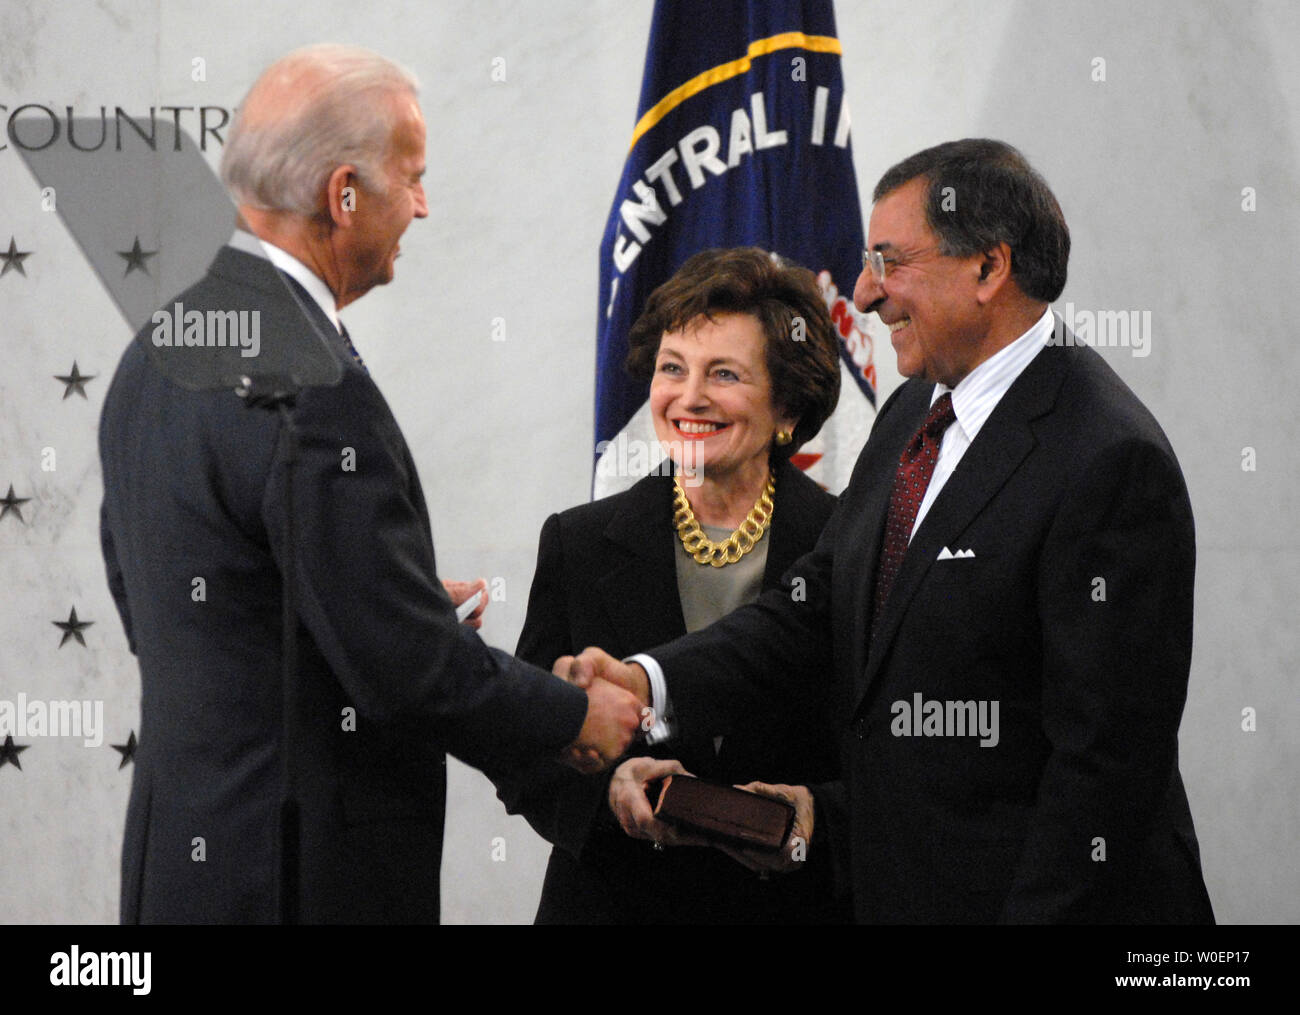 Us-Vizepräsident Joe Biden (L) schüttelt Hände mit Leon Panetta (R) nach Biden ihm schwor, als der Direktor der Central Intelligence Agency (CIA), während die Panetta Frau Sylvia hält die Bibel, im CIA-Hauptquartier in McLean, Virginia, am 19. Februar 2009. (UPI Foto/Alexis C Glenn) Stockfoto